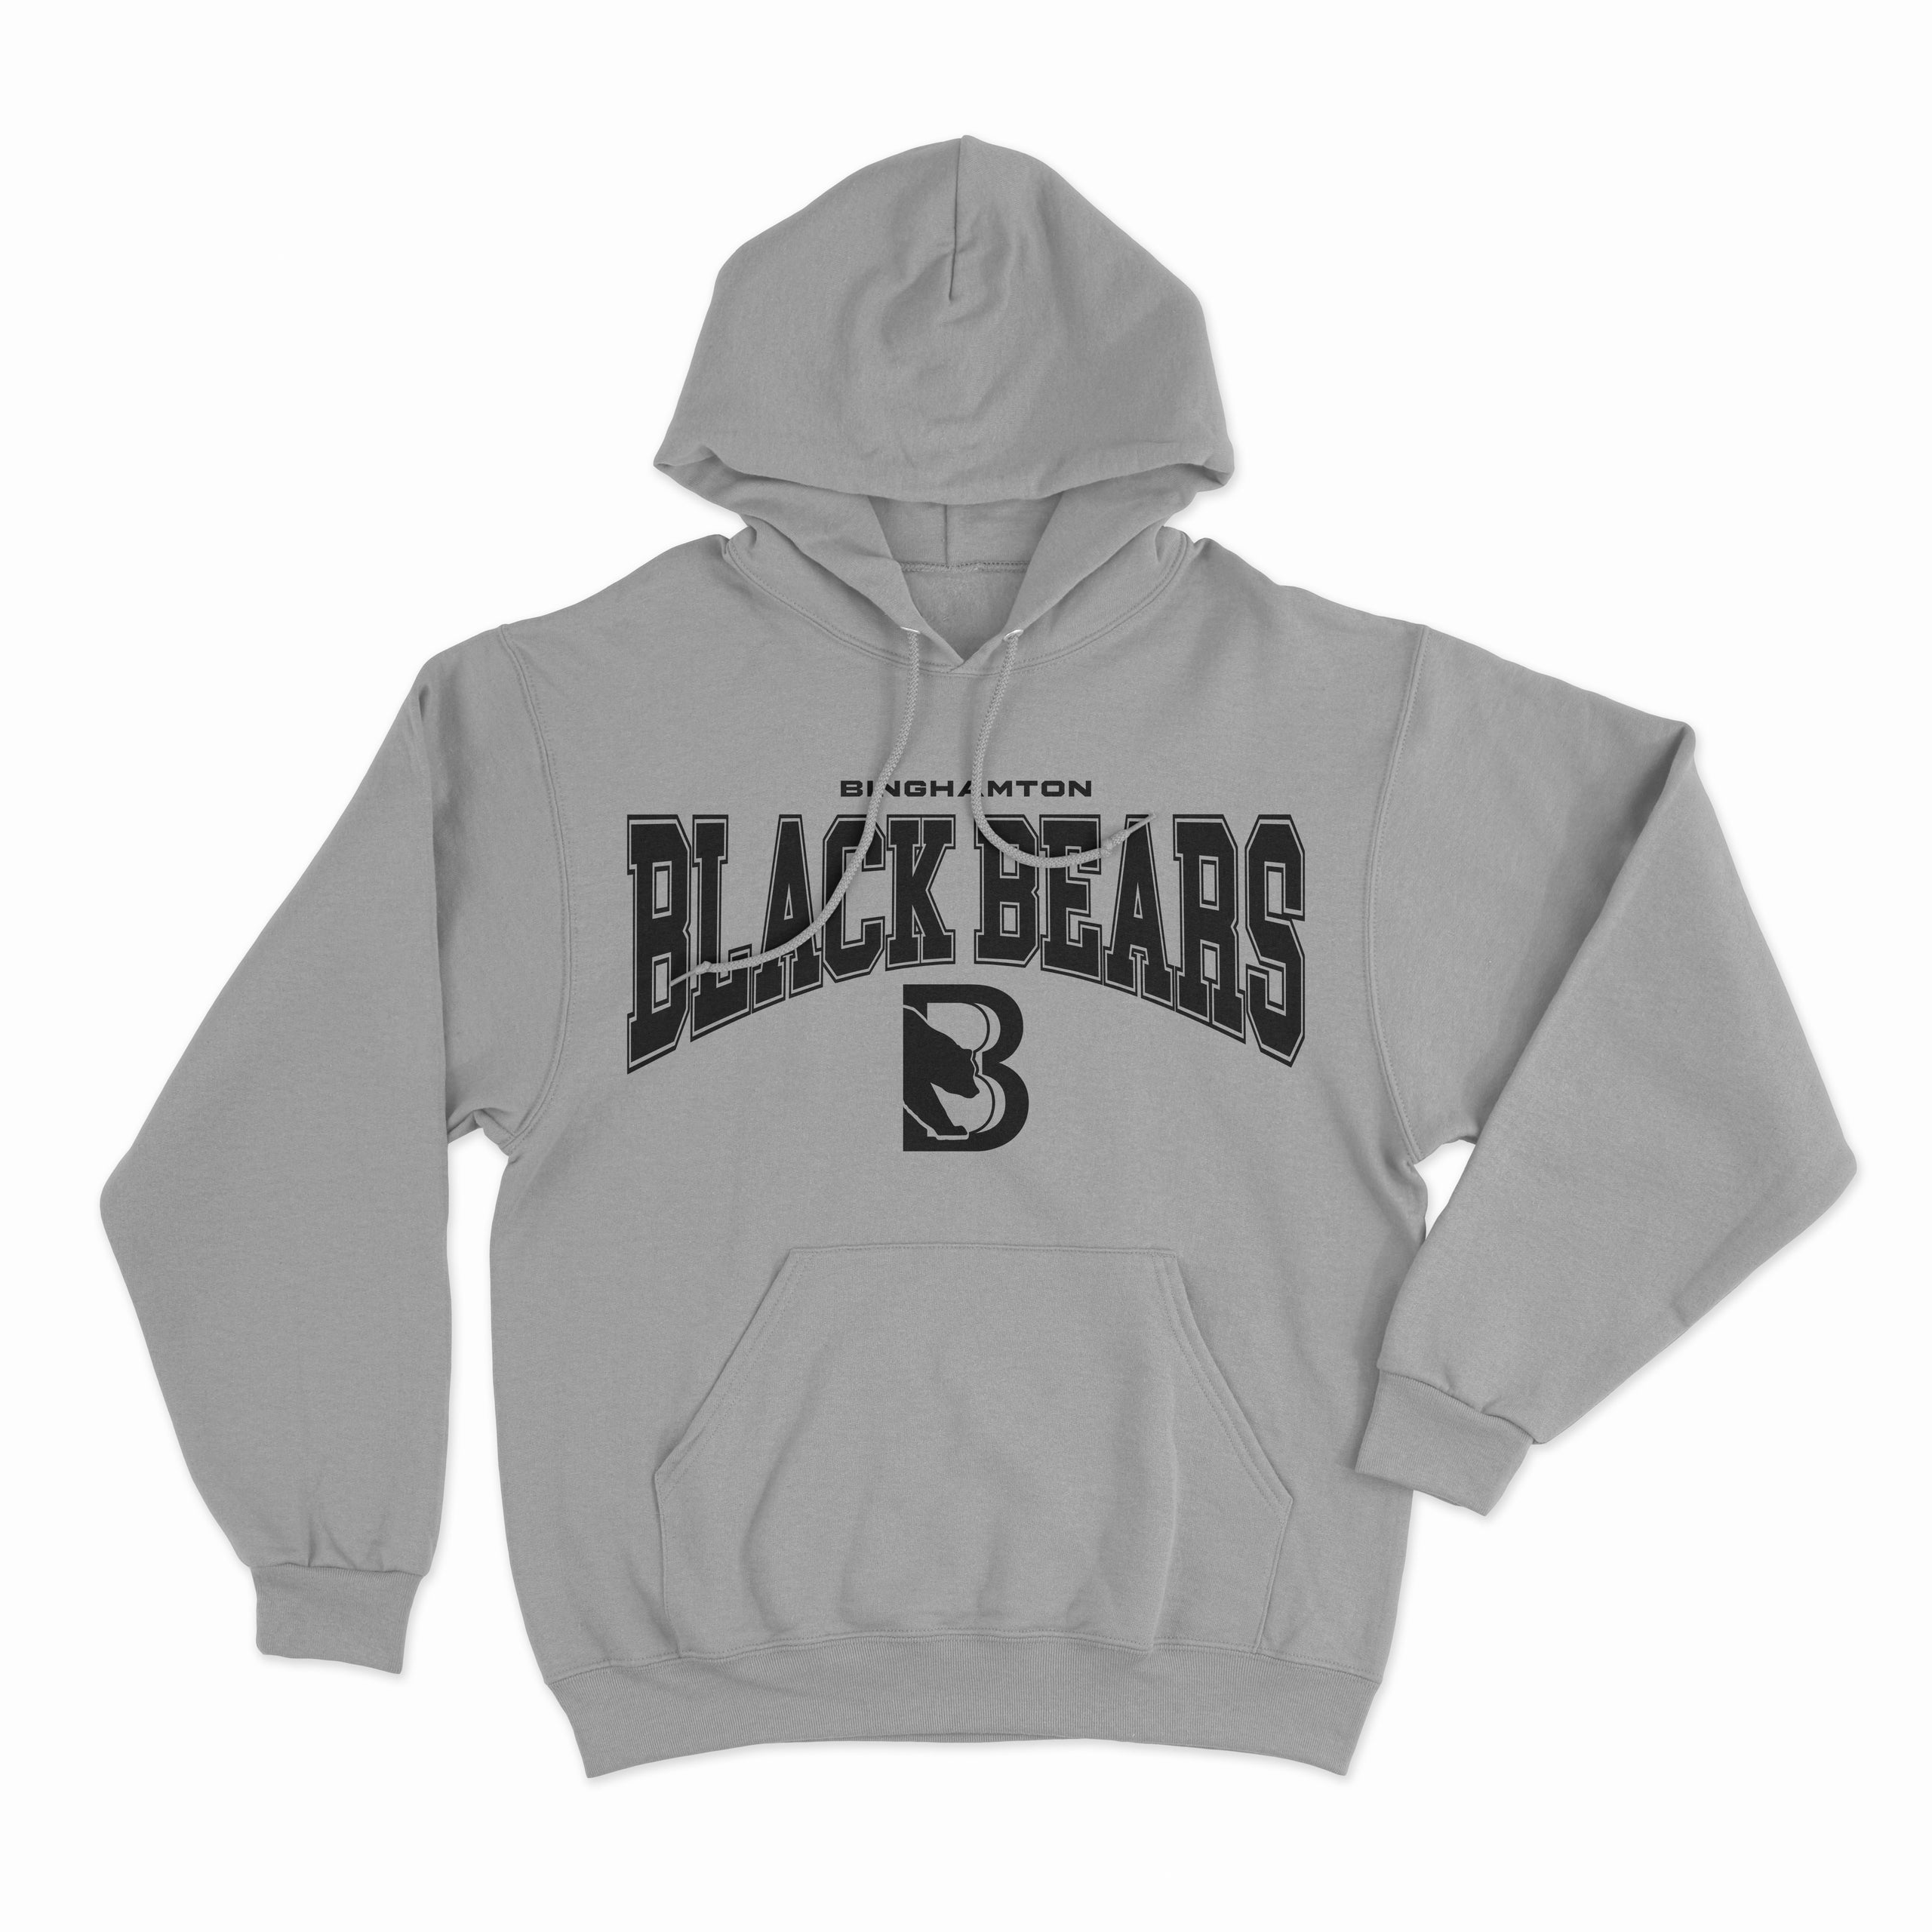 Grey Black Bears Hoodie | Binghamton Black Bears